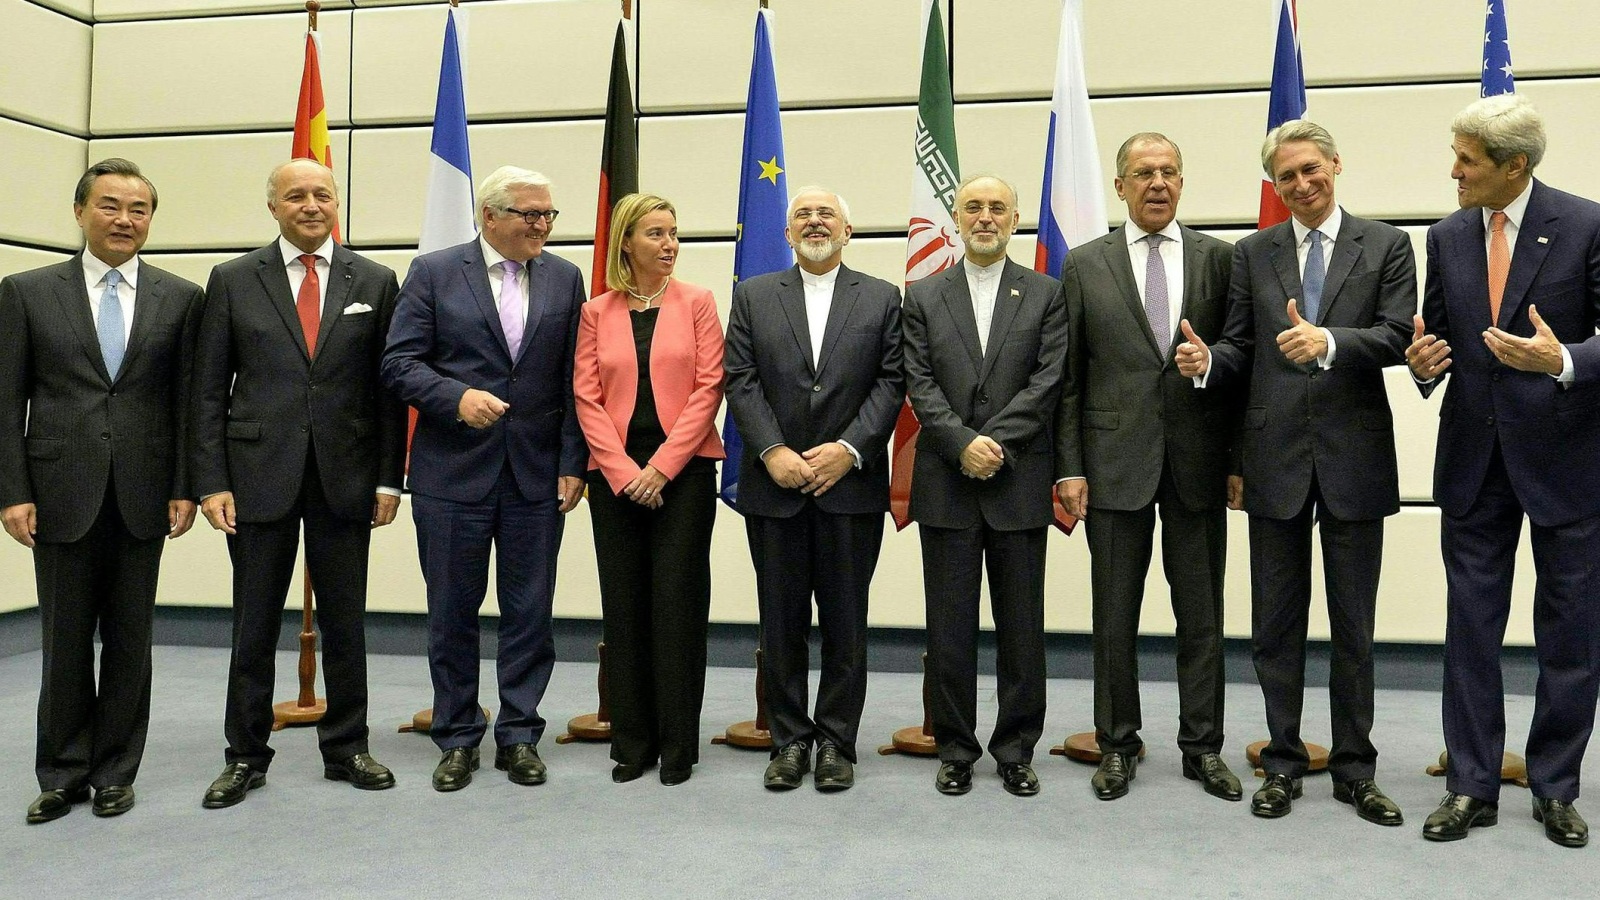 وزراء خارجية أميركا وإيران والقوى الكبرى توصلوا إلى اتفاق النووي بفيينا منتصف 2015 بعد جهود مضنية (الأوروبية)